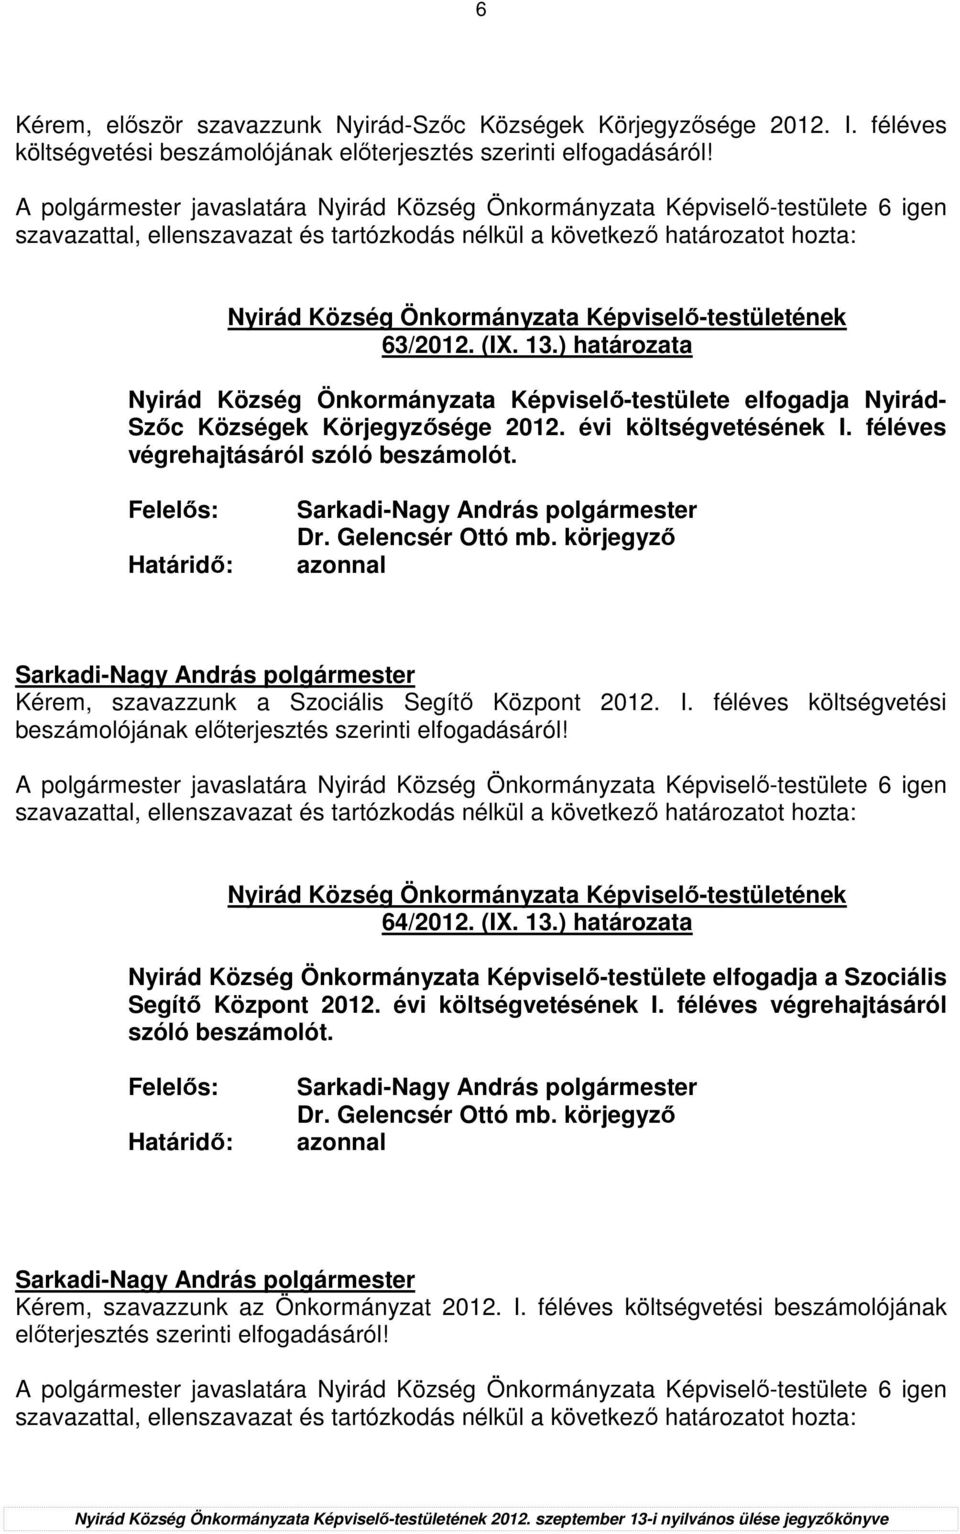 ) határozata Nyirád Község Önkormányzata Képviselı-testülete elfogadja Nyirád- Szıc Községek Körjegyzısége 2012. évi költségvetésének I. féléves végrehajtásáról szóló beszámolót.